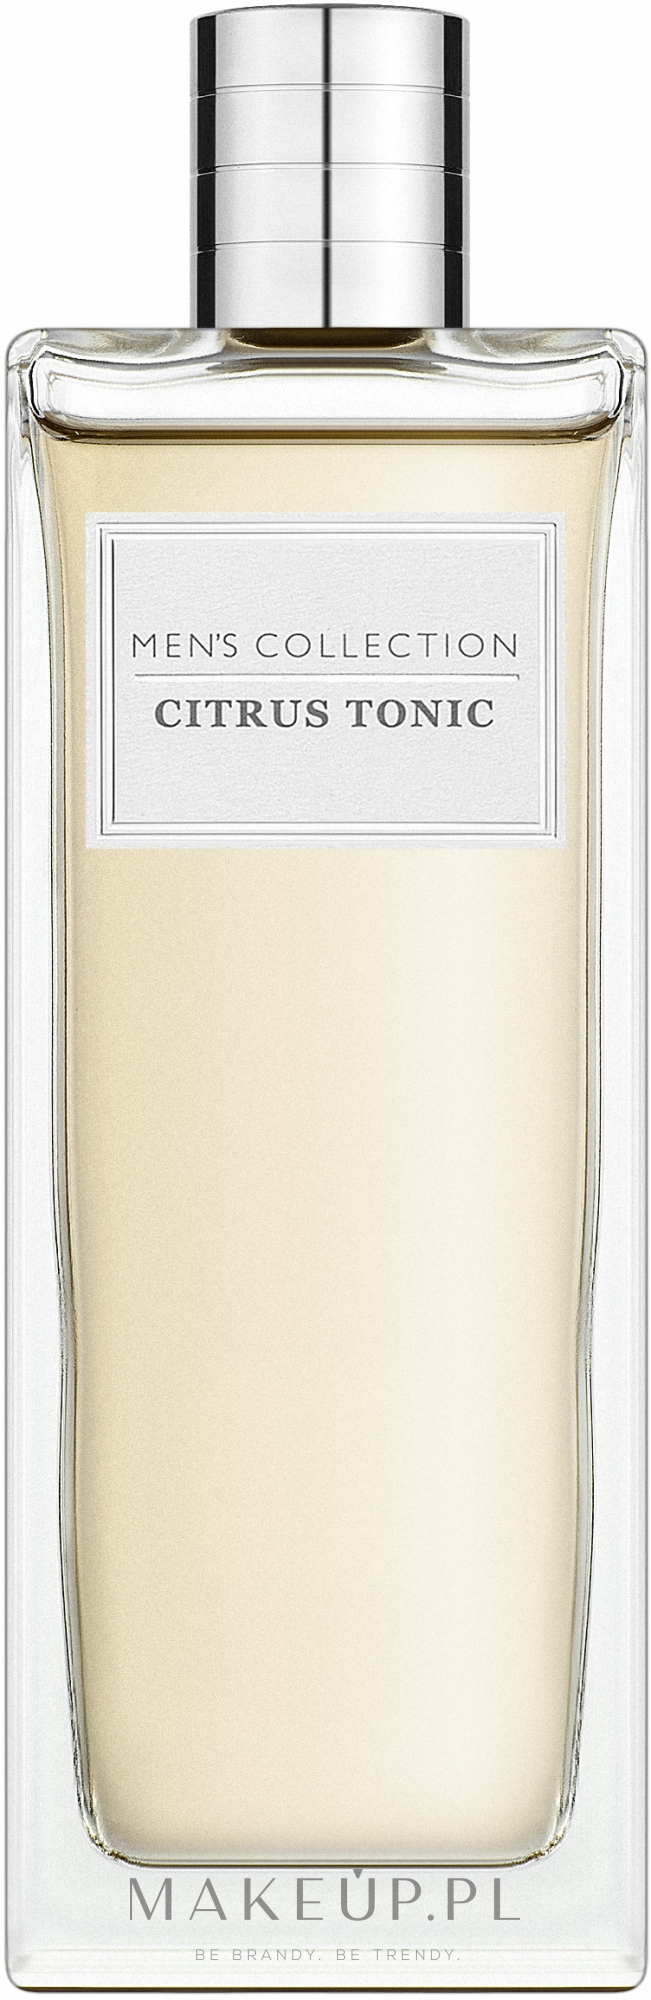 oriflame men's collection - citrus tonic